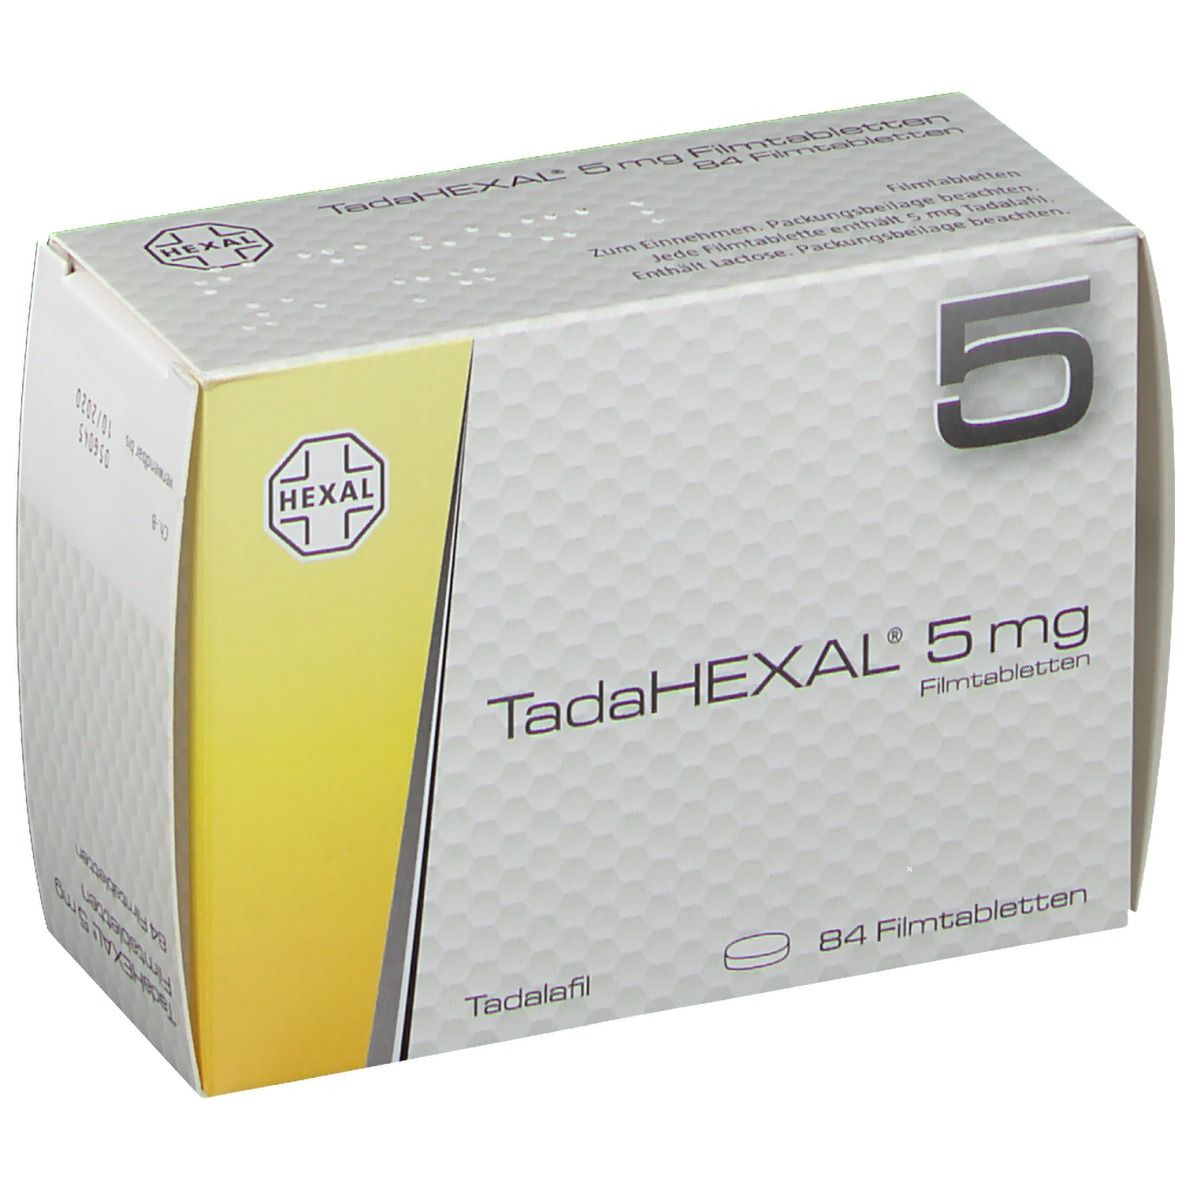 TadaHEXAL® 5 mg